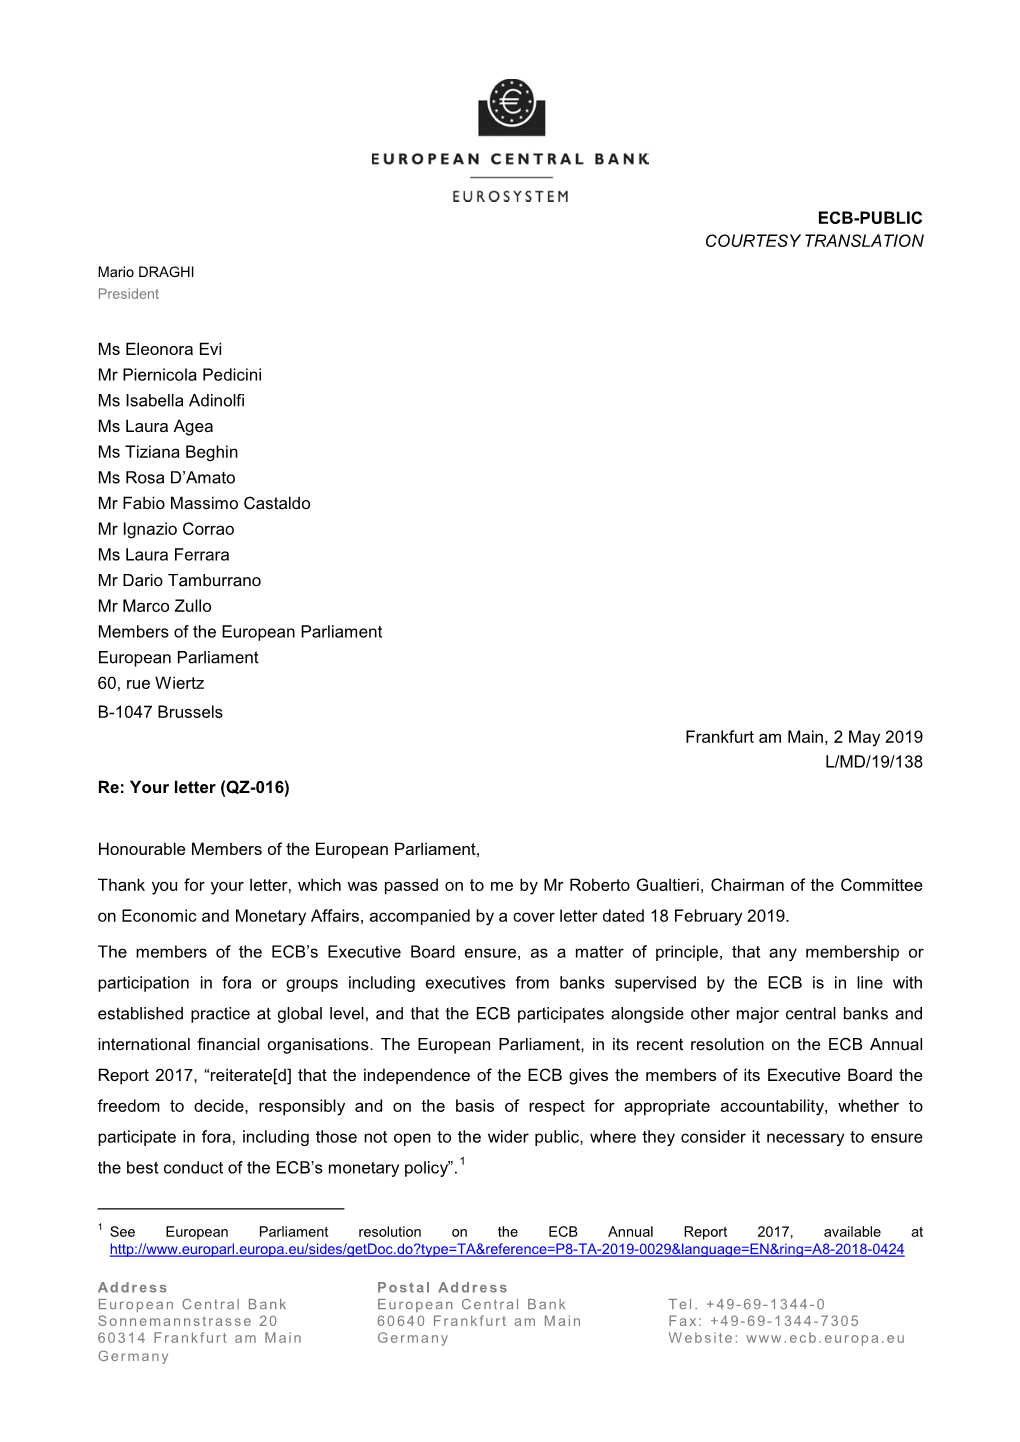 Letter from the ECB President to Ms Eleonora Evi, Mr Piernicola Pedicini